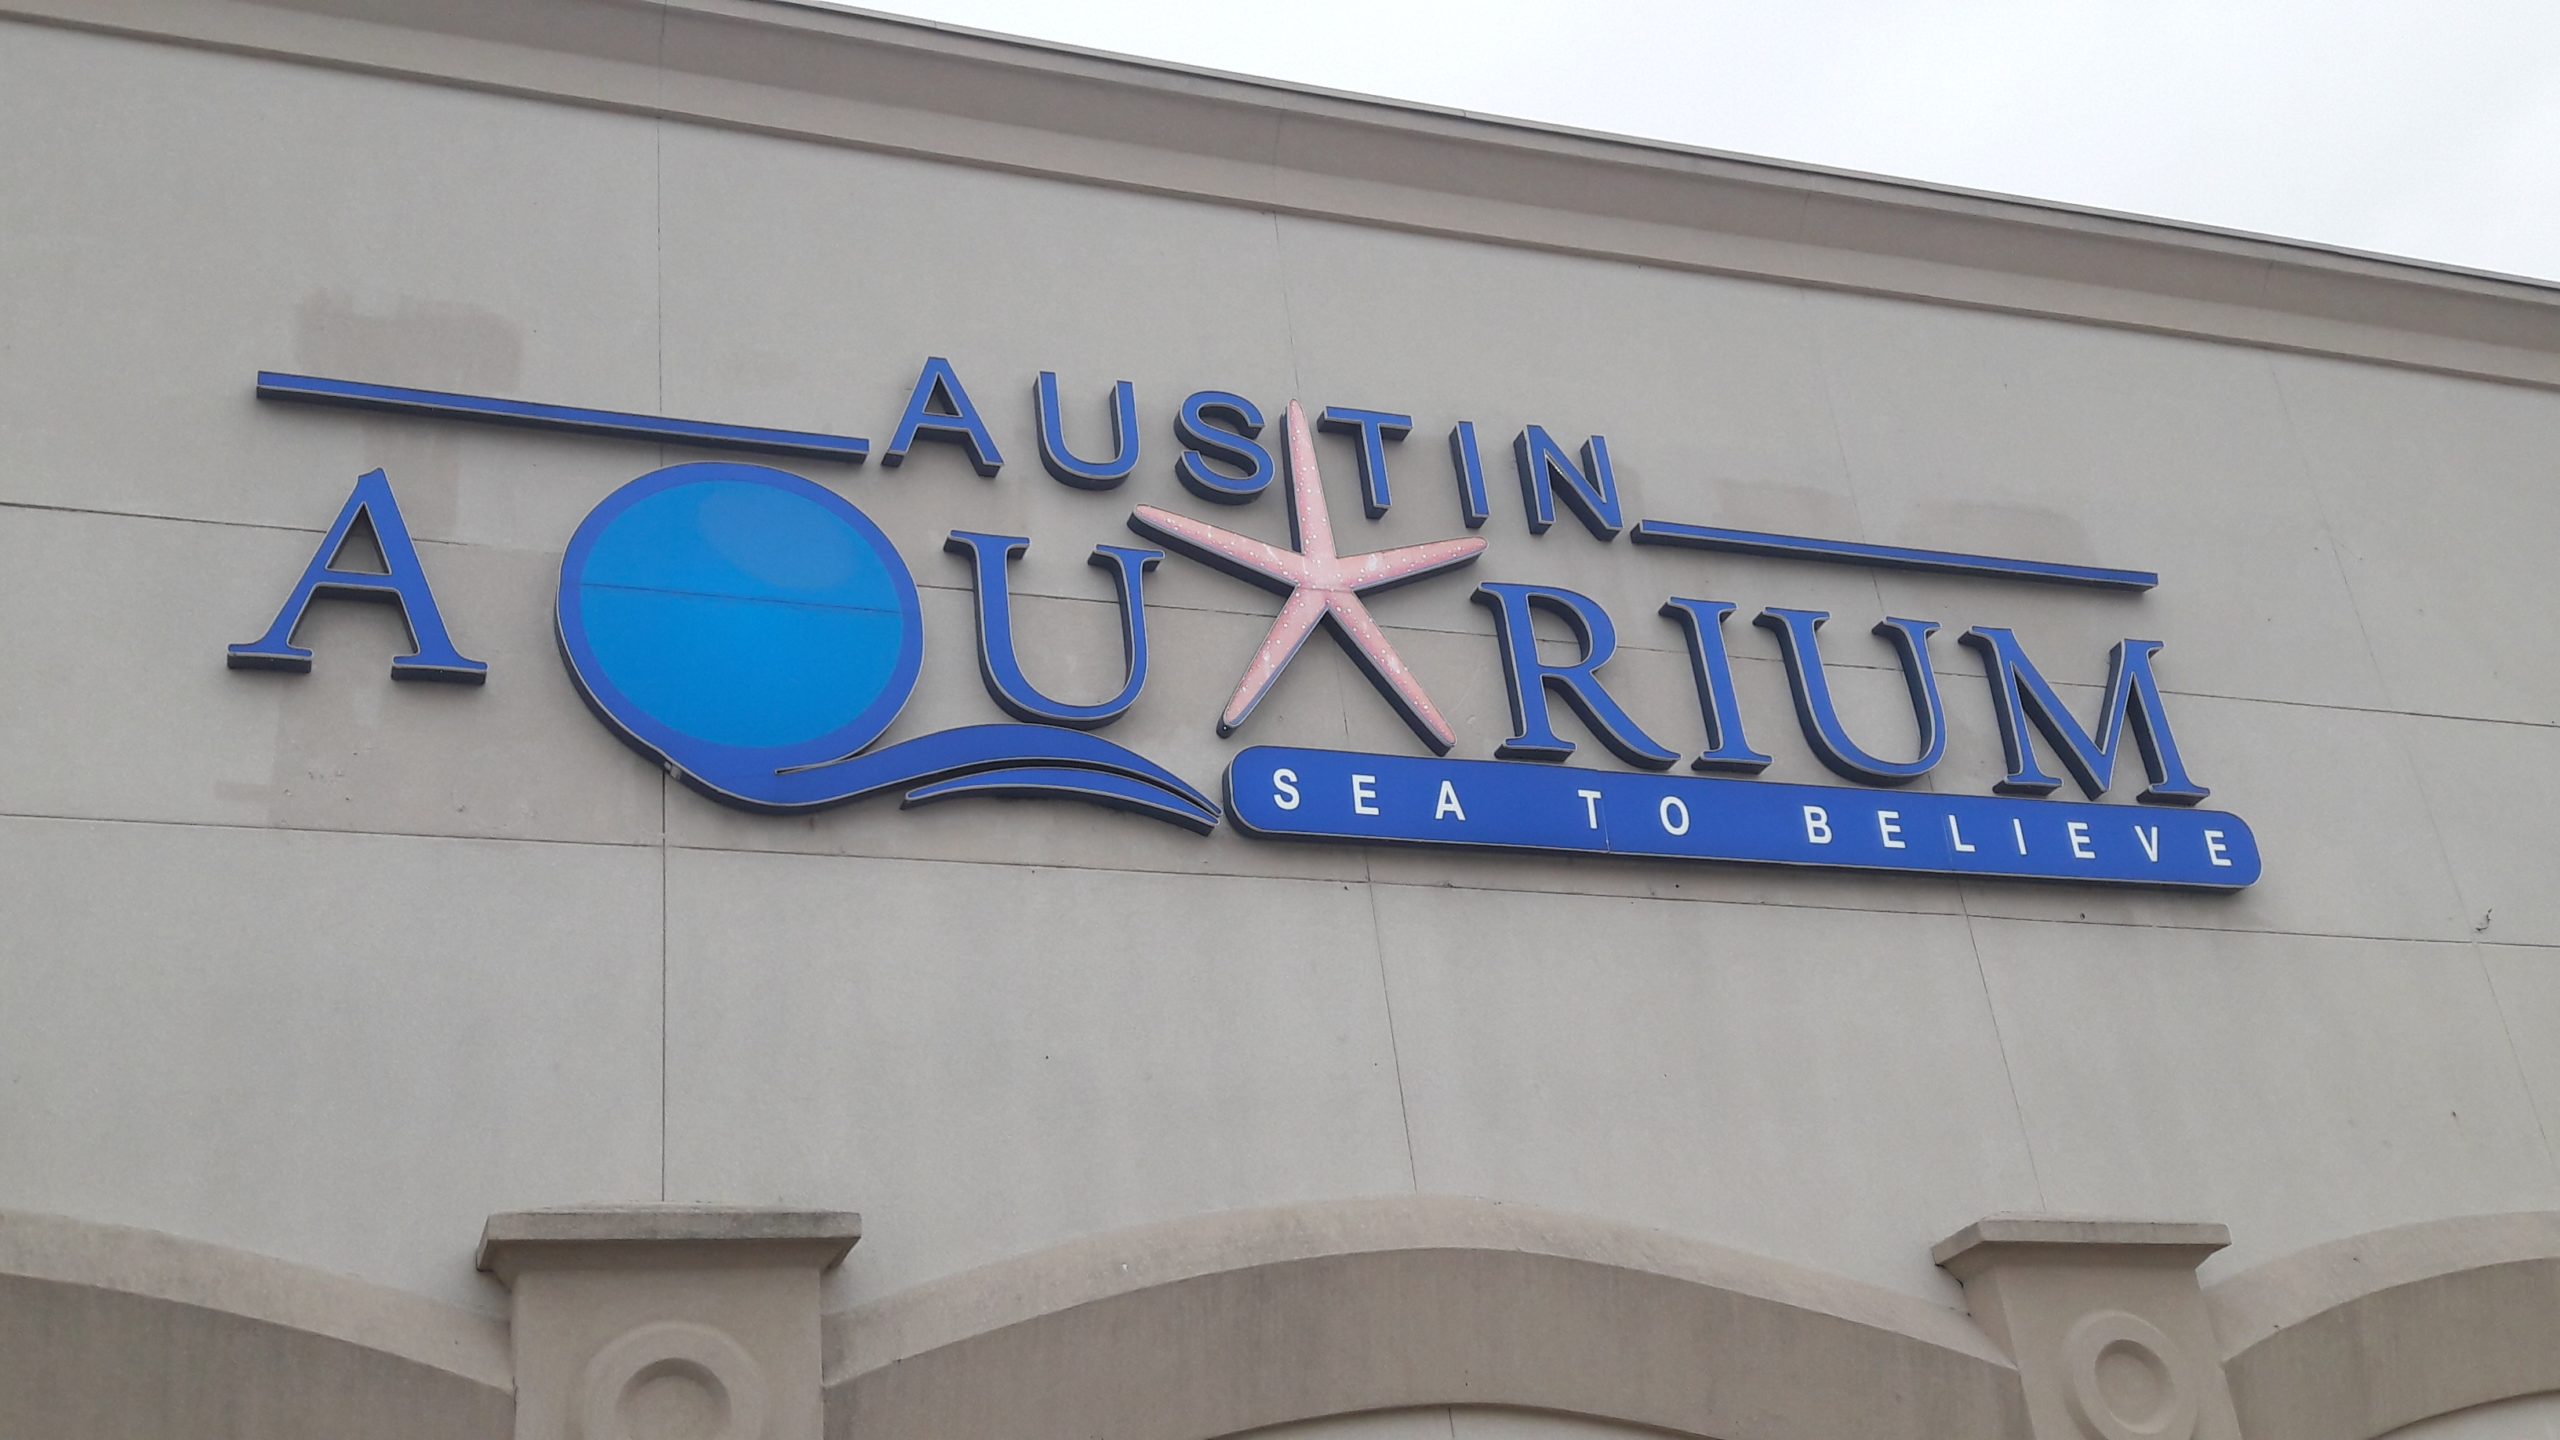 Aquarium Austin